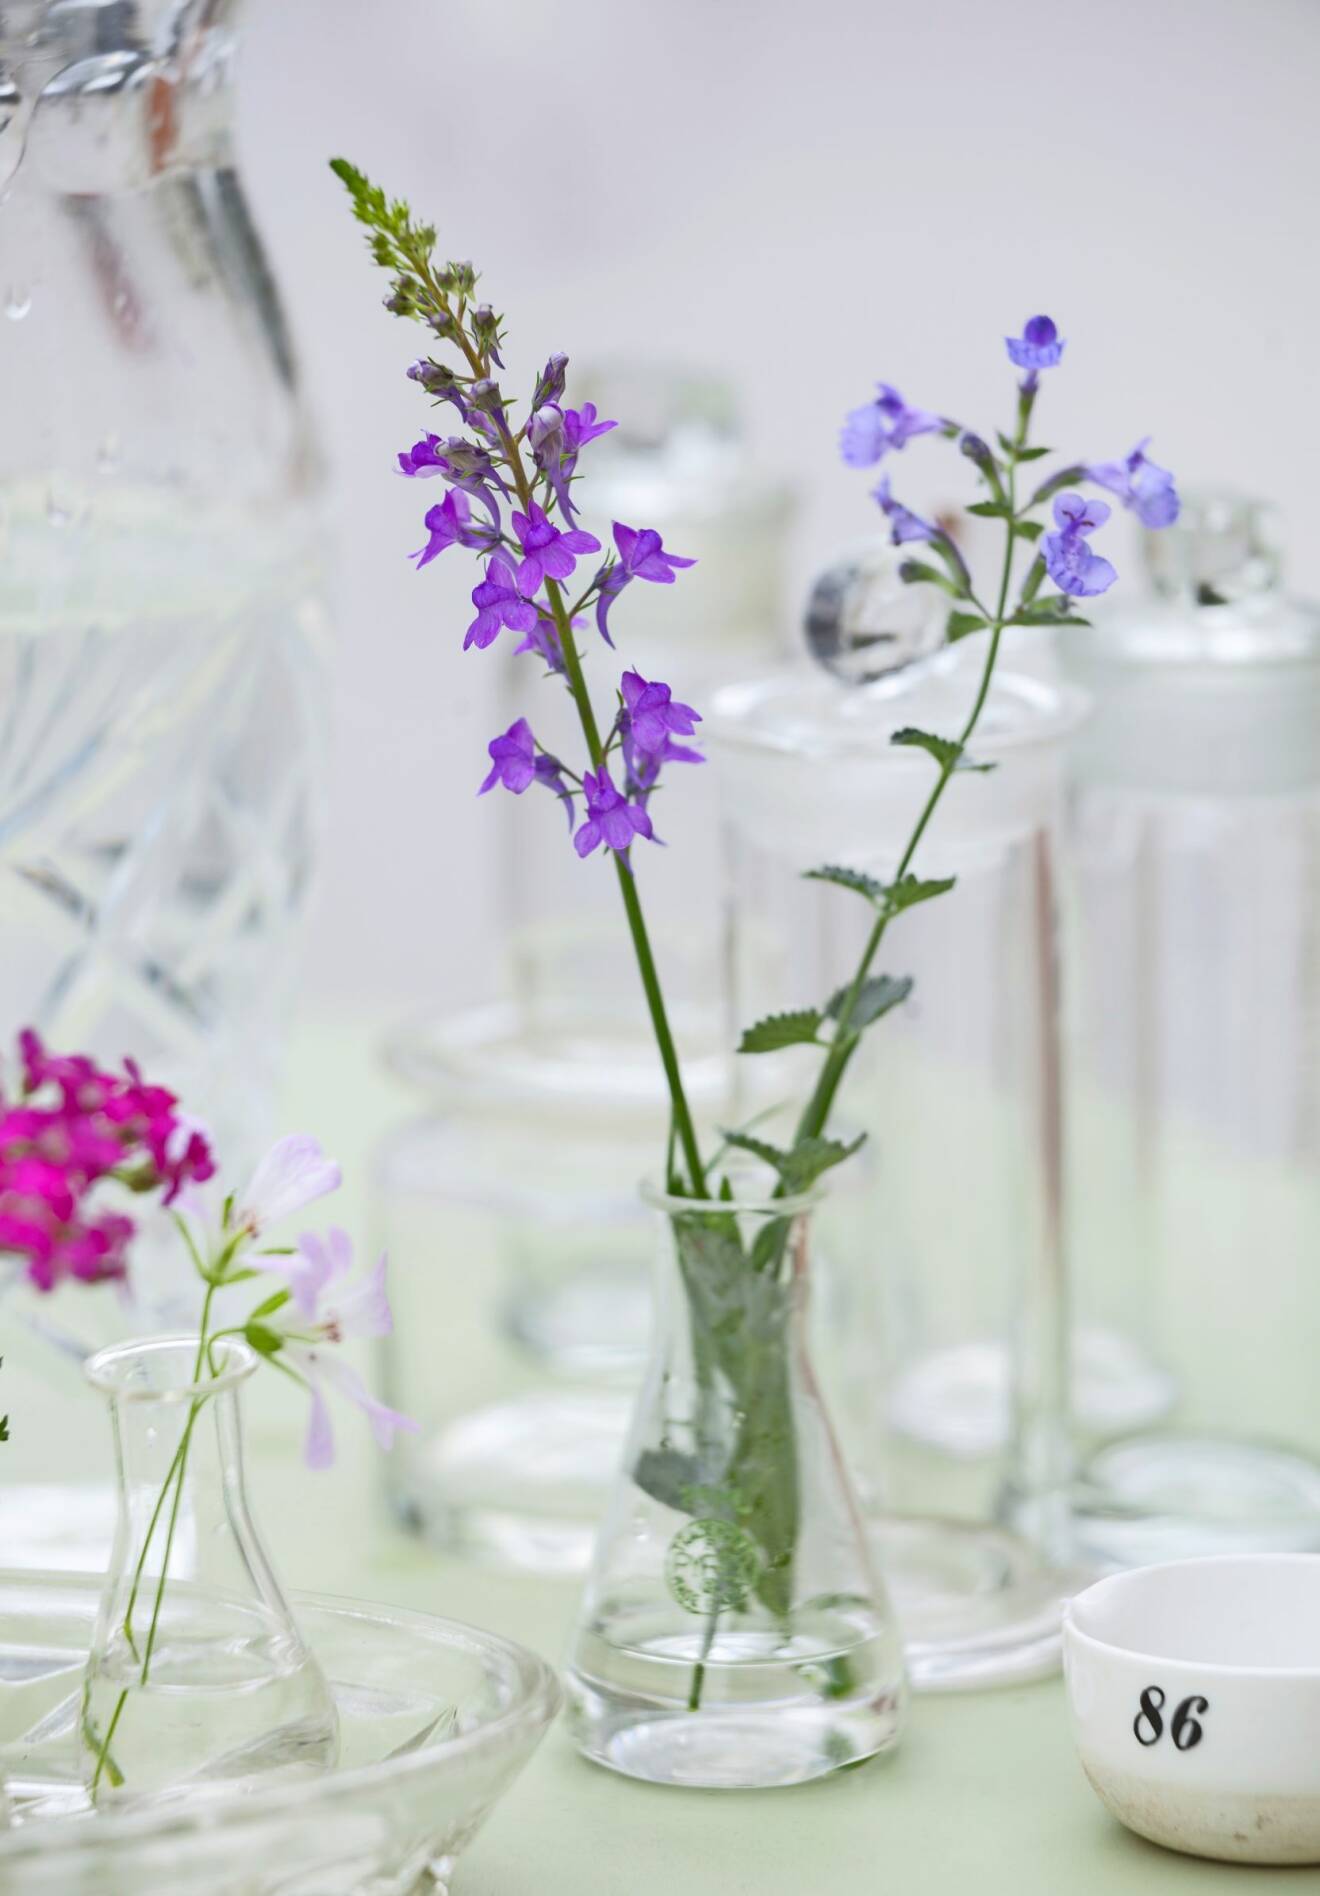 Purpursporre och kantnepeta är två blommande perenner som pryder sina platser i vasen.